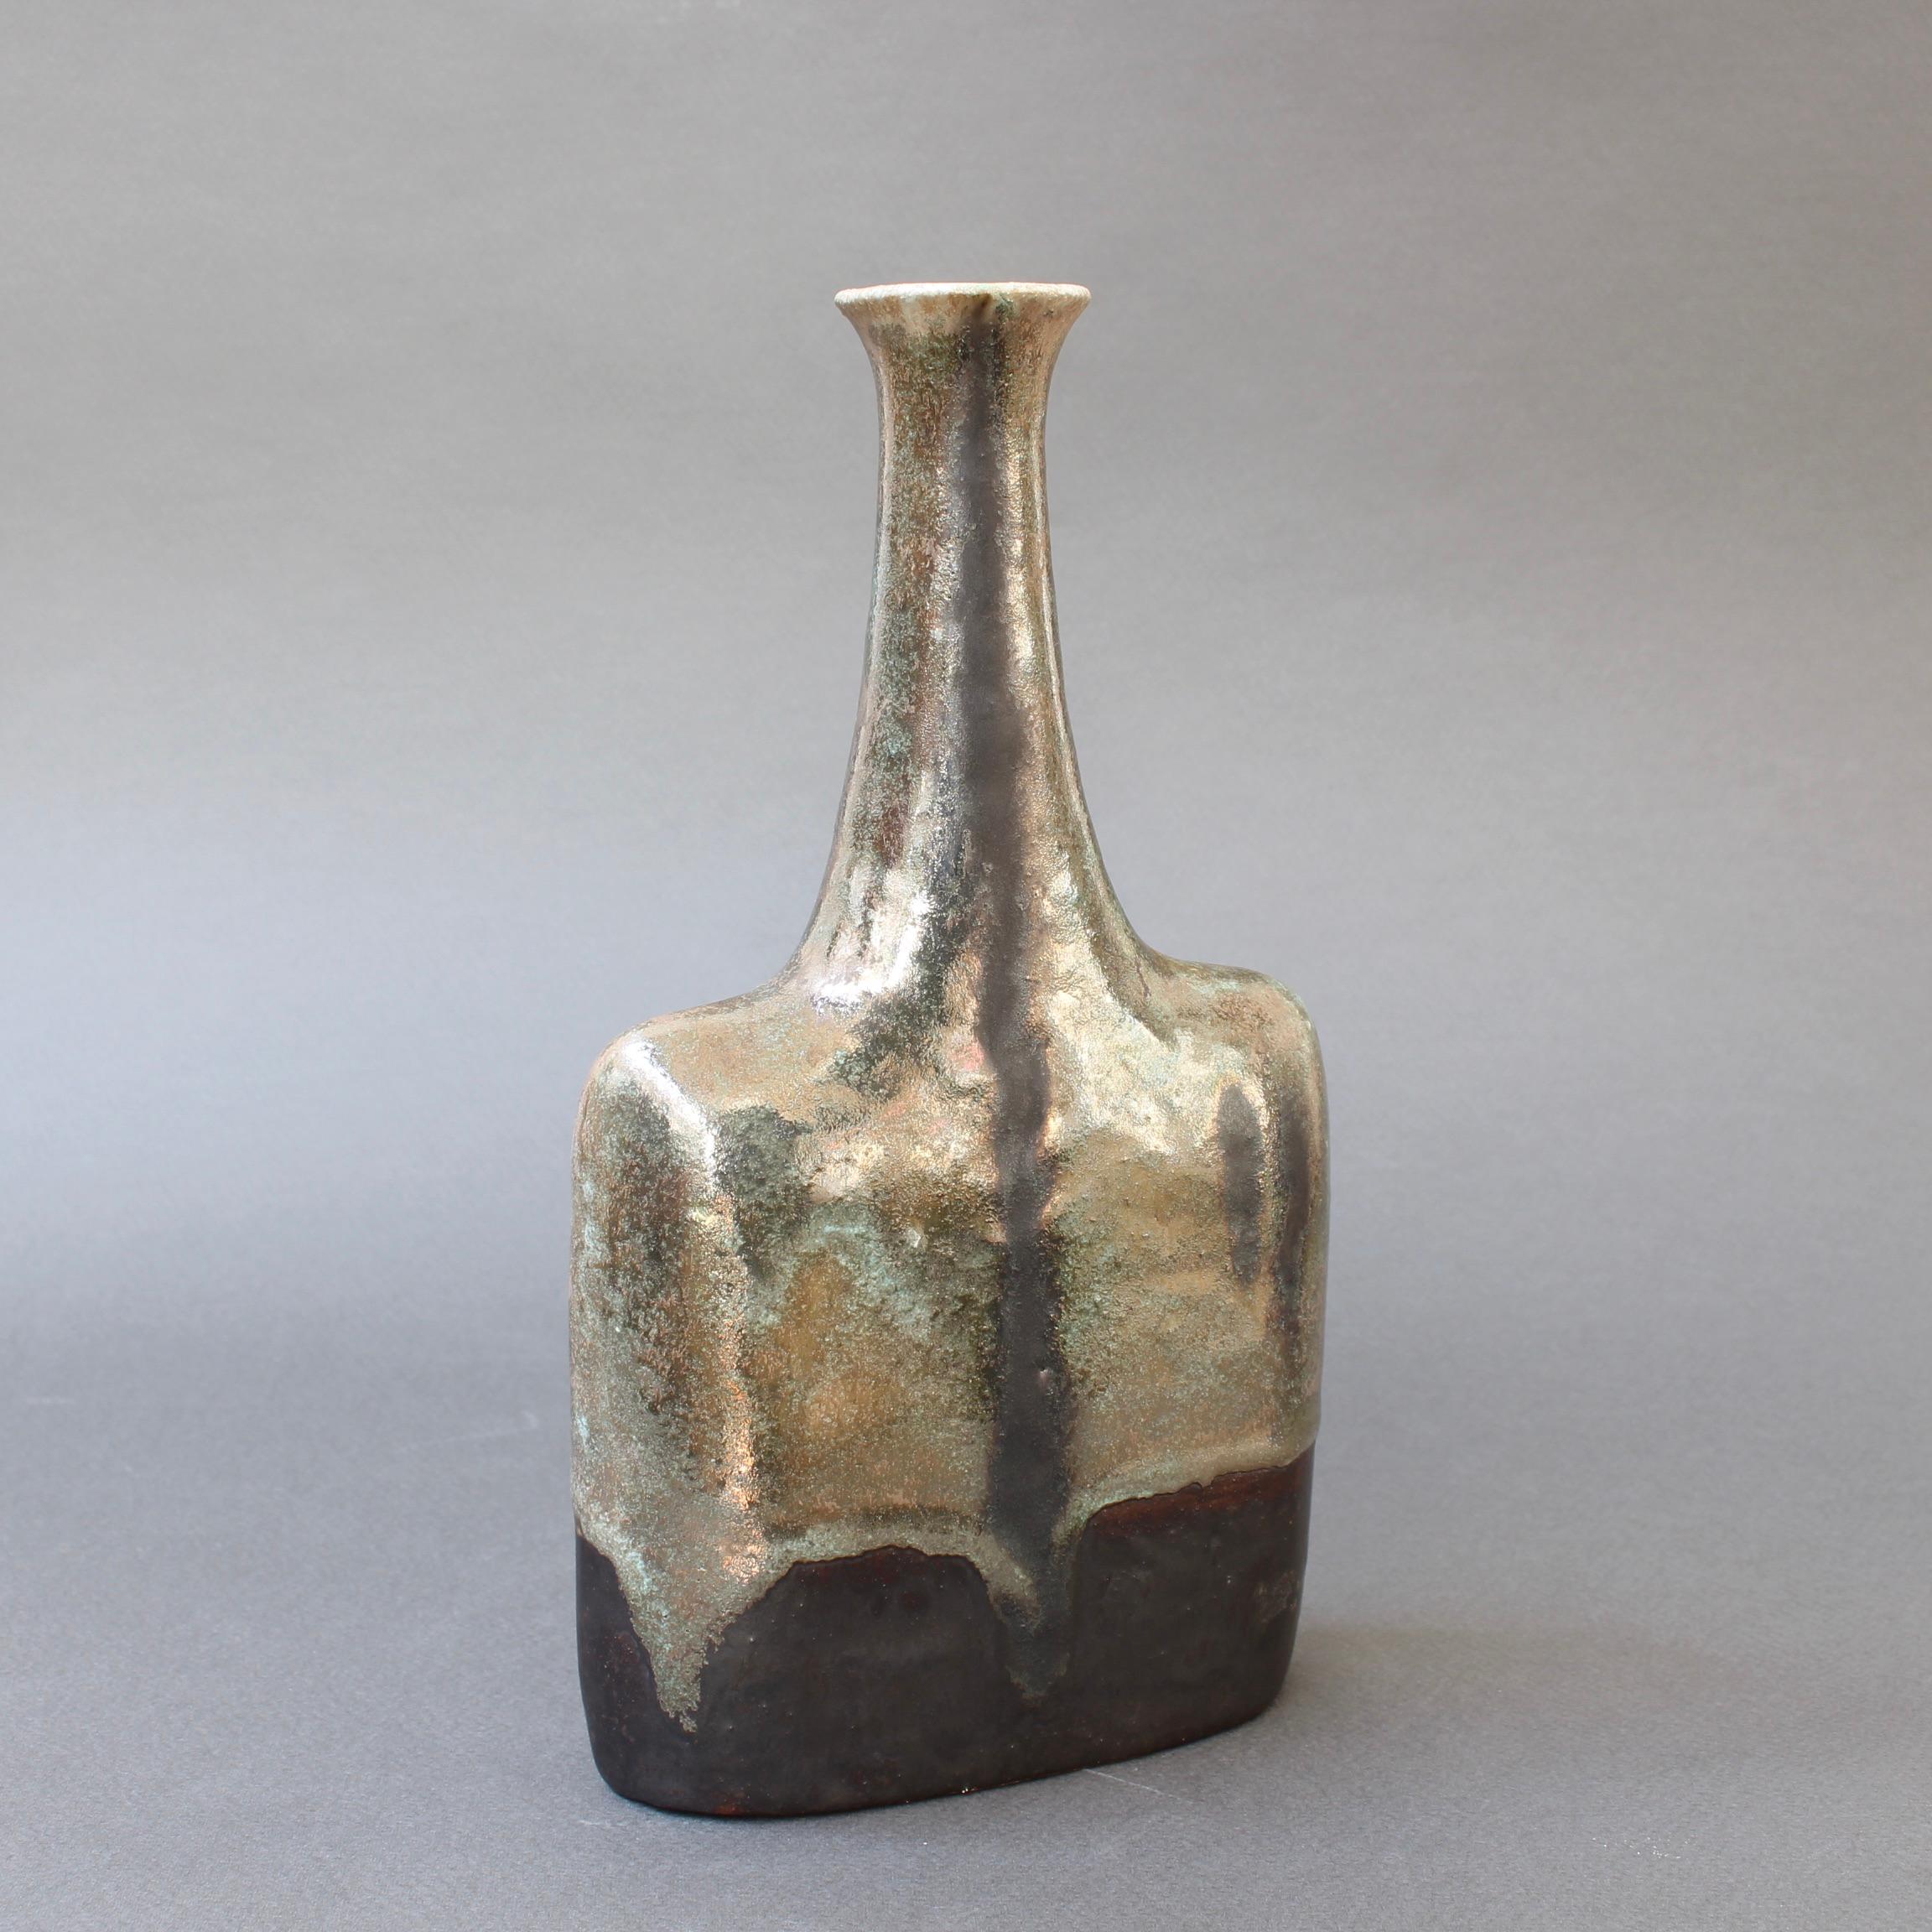 Vase / bouteille en céramique avec glaçure à reflets métalliques et motif de gouttes de vert-de-gris par le céramiste Bruno Gambone, vers les années 1980. Cet élégant vase en forme de bouteille à ouverture étroite est une œuvre d'art. Le corps